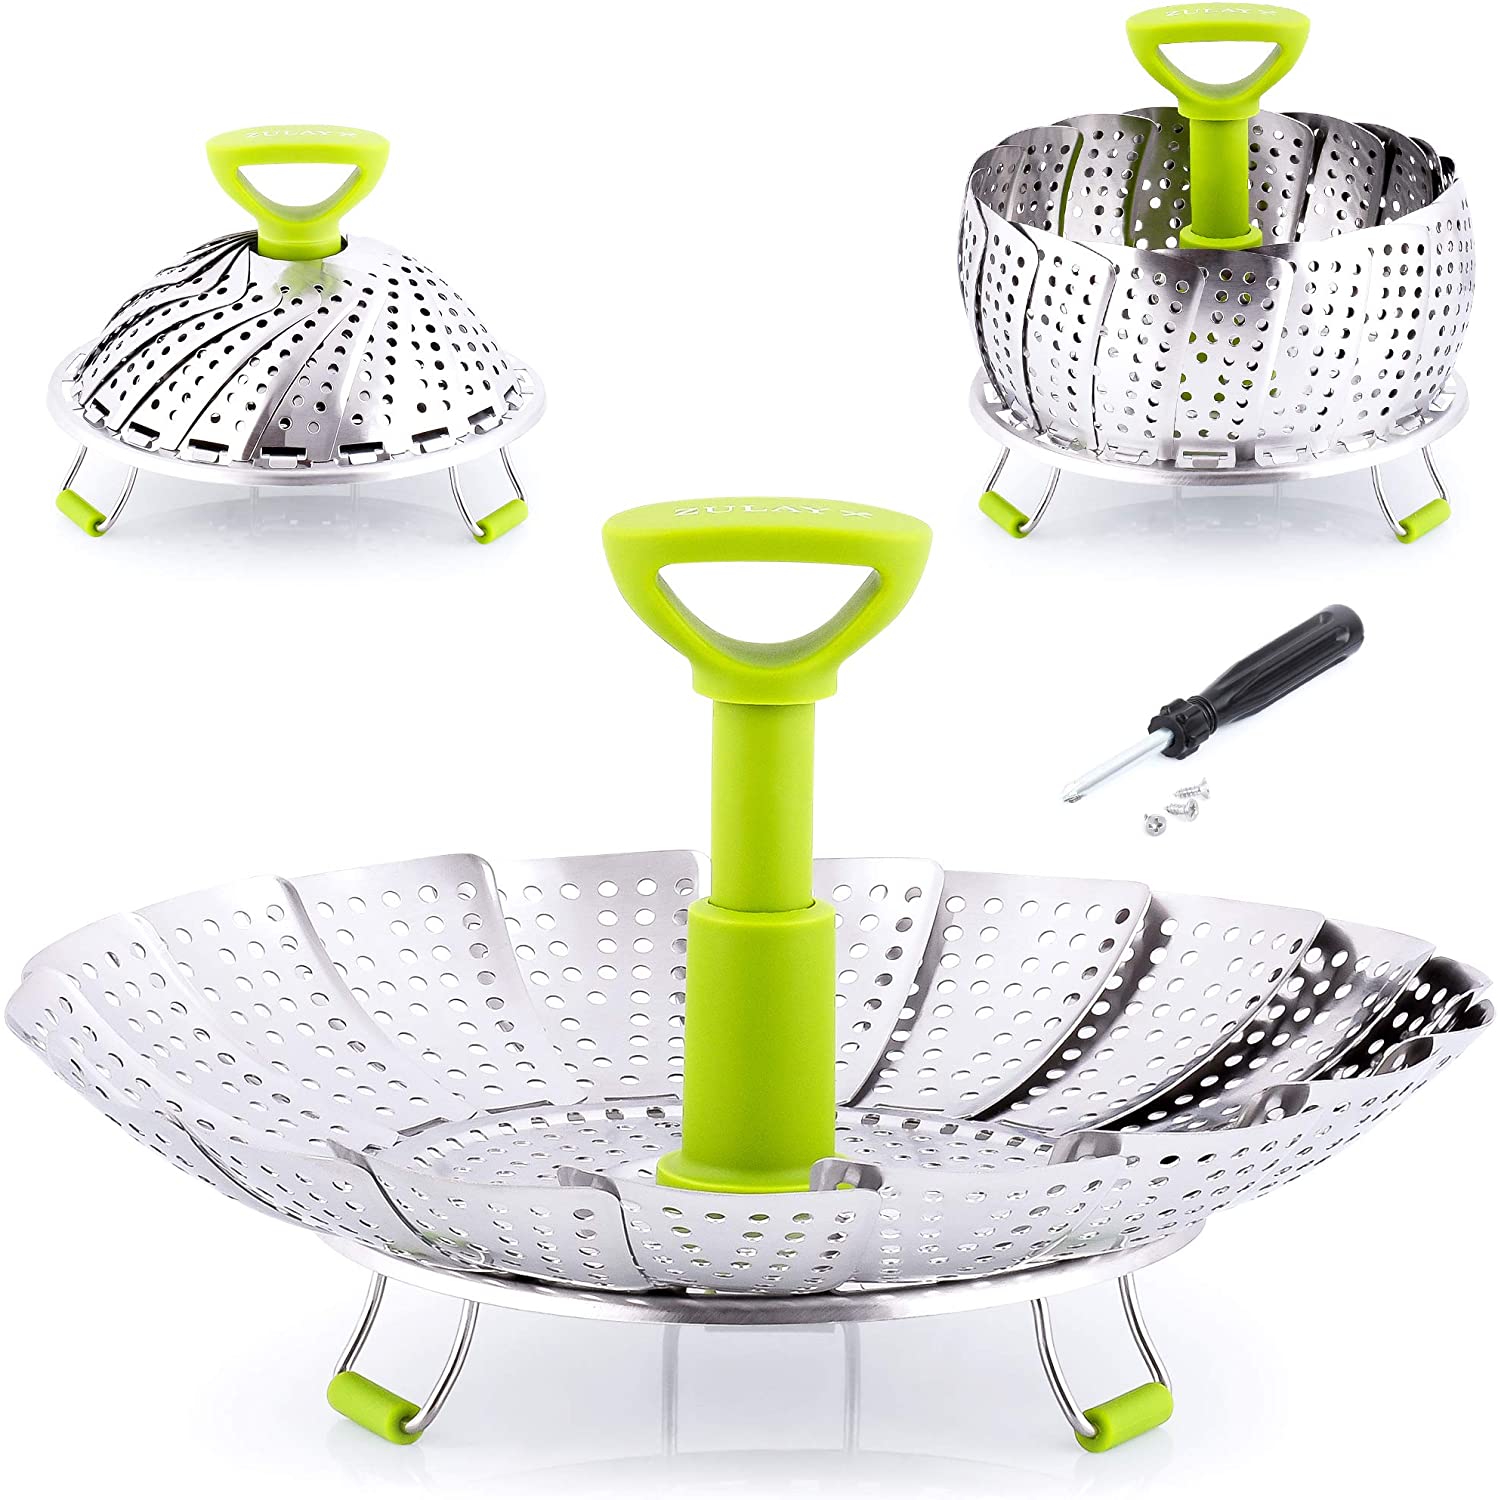 Adjustable Vegetable Steamer Basket - Zulay KitchenZulay Kitchen